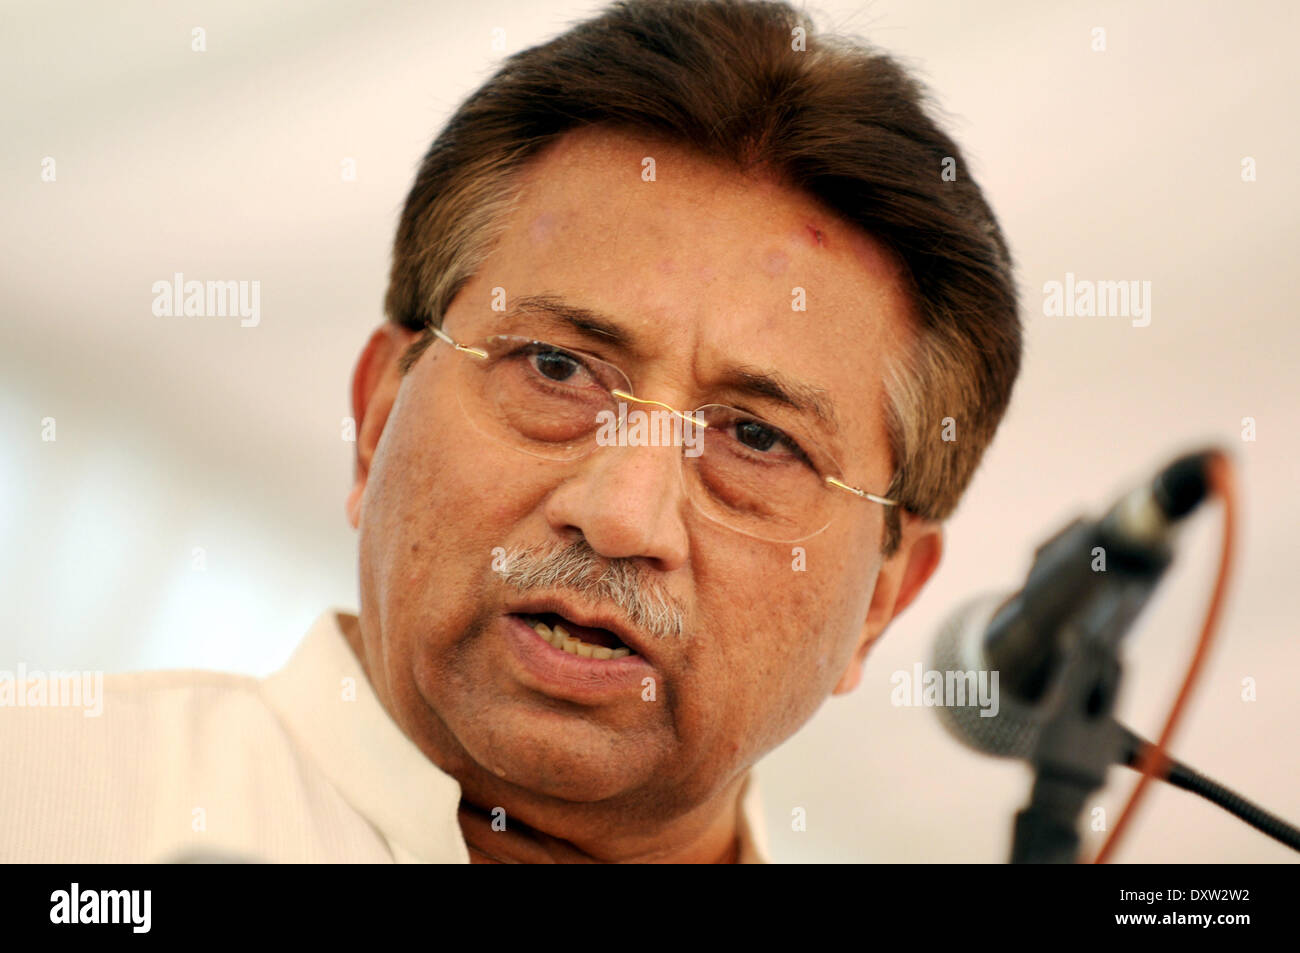 Islamabad. Apr 15, 2013. Photo prise le 15 avril 2013 montre l'ancien président pakistanais Pervez Musharraf s'exprimant lors d'une conférence de presse à Islamabad, capitale du Pakistan. Un tribunal spécial, qui a inculpé l'ancien dirigeant militaire Pervez Musharraf pour haute trahison par rapport à 2007 Proclamation de l'état d'urgence, le lundi a rejeté sa demande de lui permettre d'aller à l'étranger pour le traitement. Le gouvernement a interdit d'aller à l'étranger Musharraf en mettant son nom sur la liste de contrôle de sortie (ECL). © Ahmad Kamal/Xinhua/Alamy Live News Banque D'Images